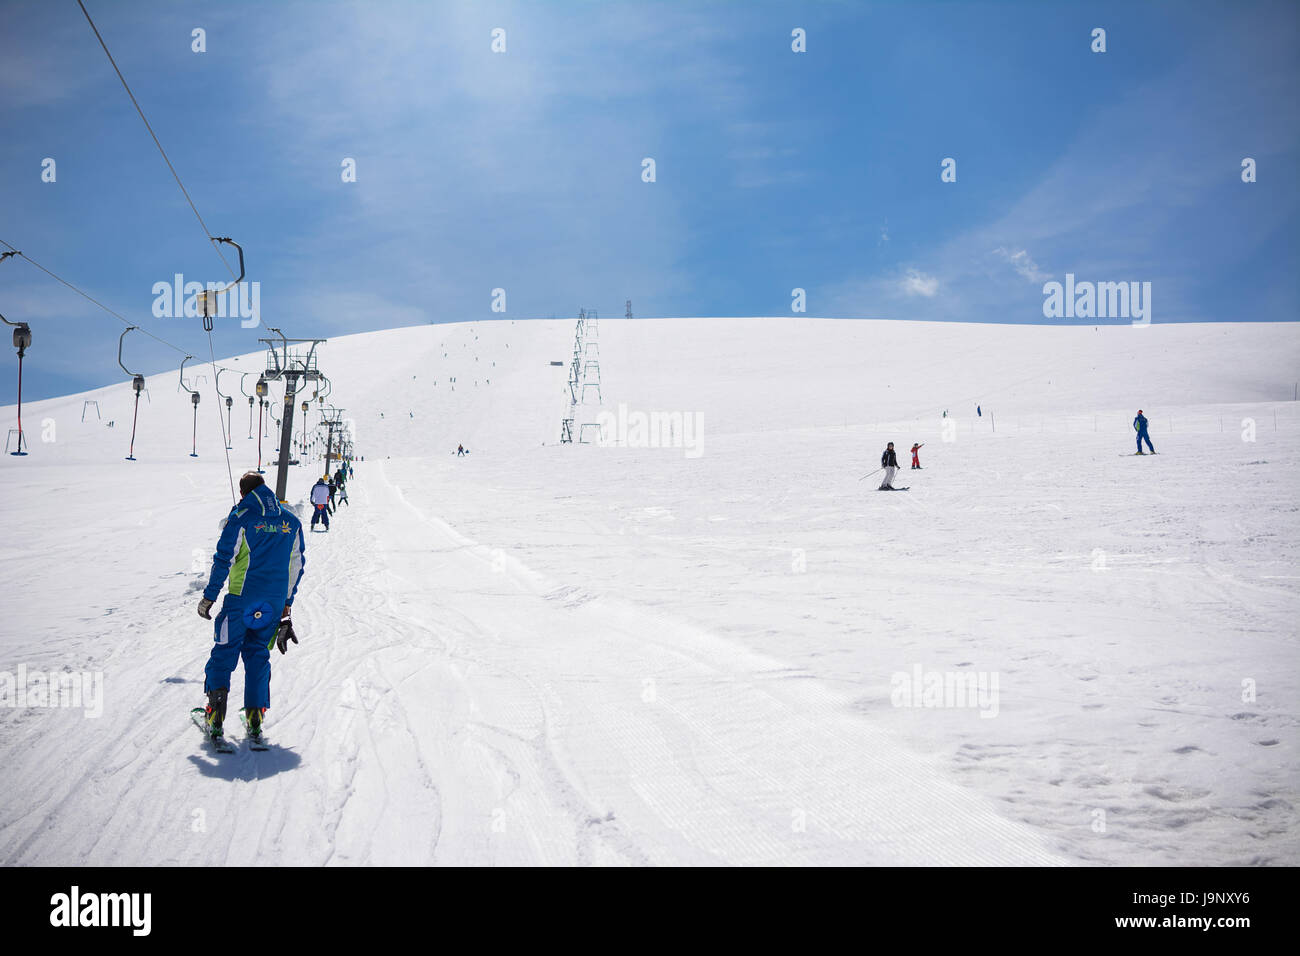 Rapino, Italien - 1. April 2017: Skilehrer steigt mit dem Skilift auf den Skipisten von Mammarosa, Majella in den Abruzzen Stockfoto